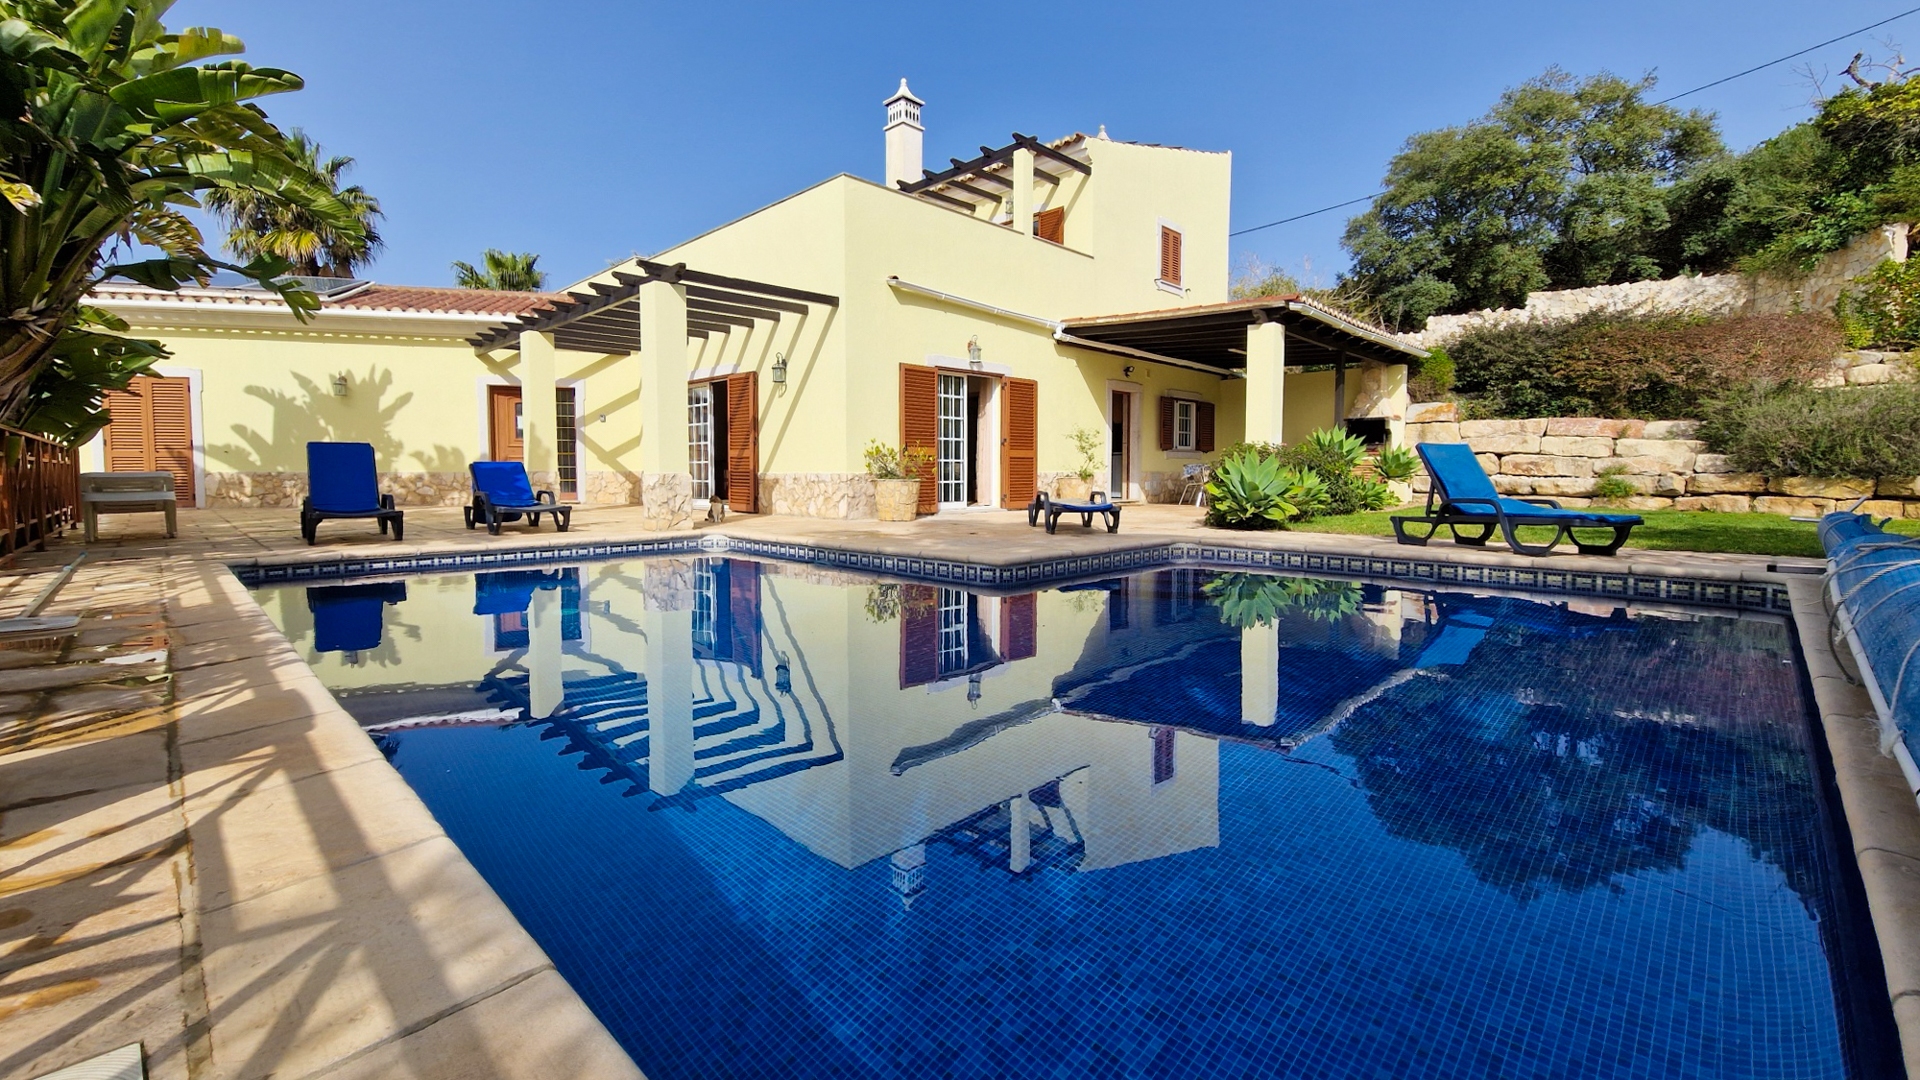 Wunderschöne Villa mit 4 Schlafzimmern in der Nähe von Estoi, Ost Algarve | PTMM138 Diese wunderschöne Villa in der Nähe von Estoi liegt auf einem Hügel und bietet absolute Privatsphäre und einen herrlichen Blick über die Landschaft.